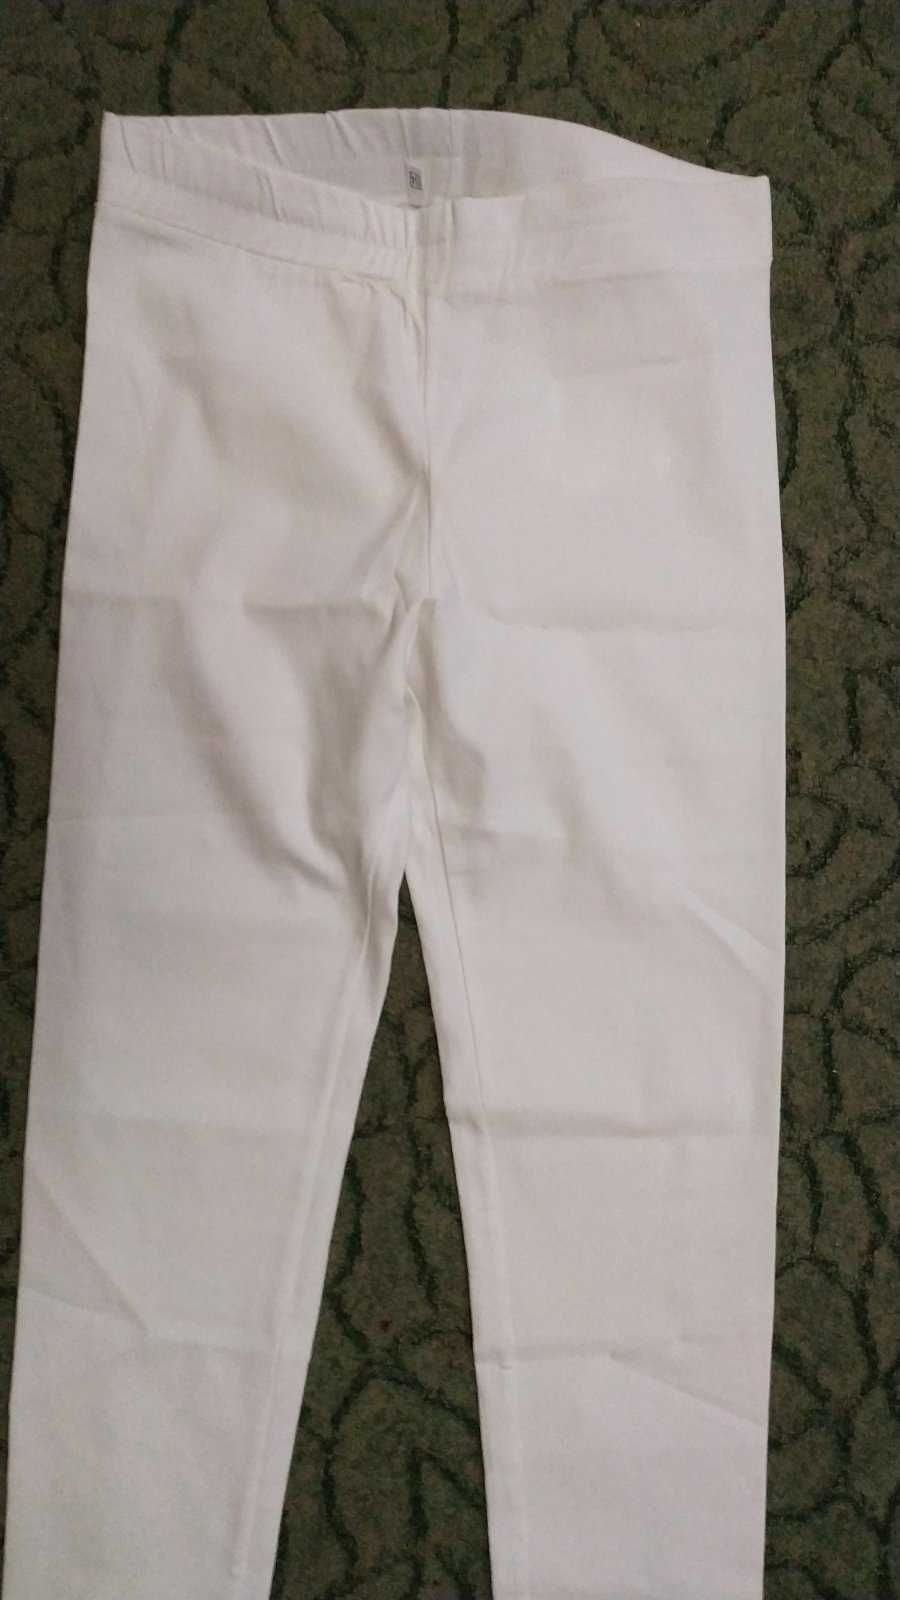 Белые стильные брюки 54 размер (новые)